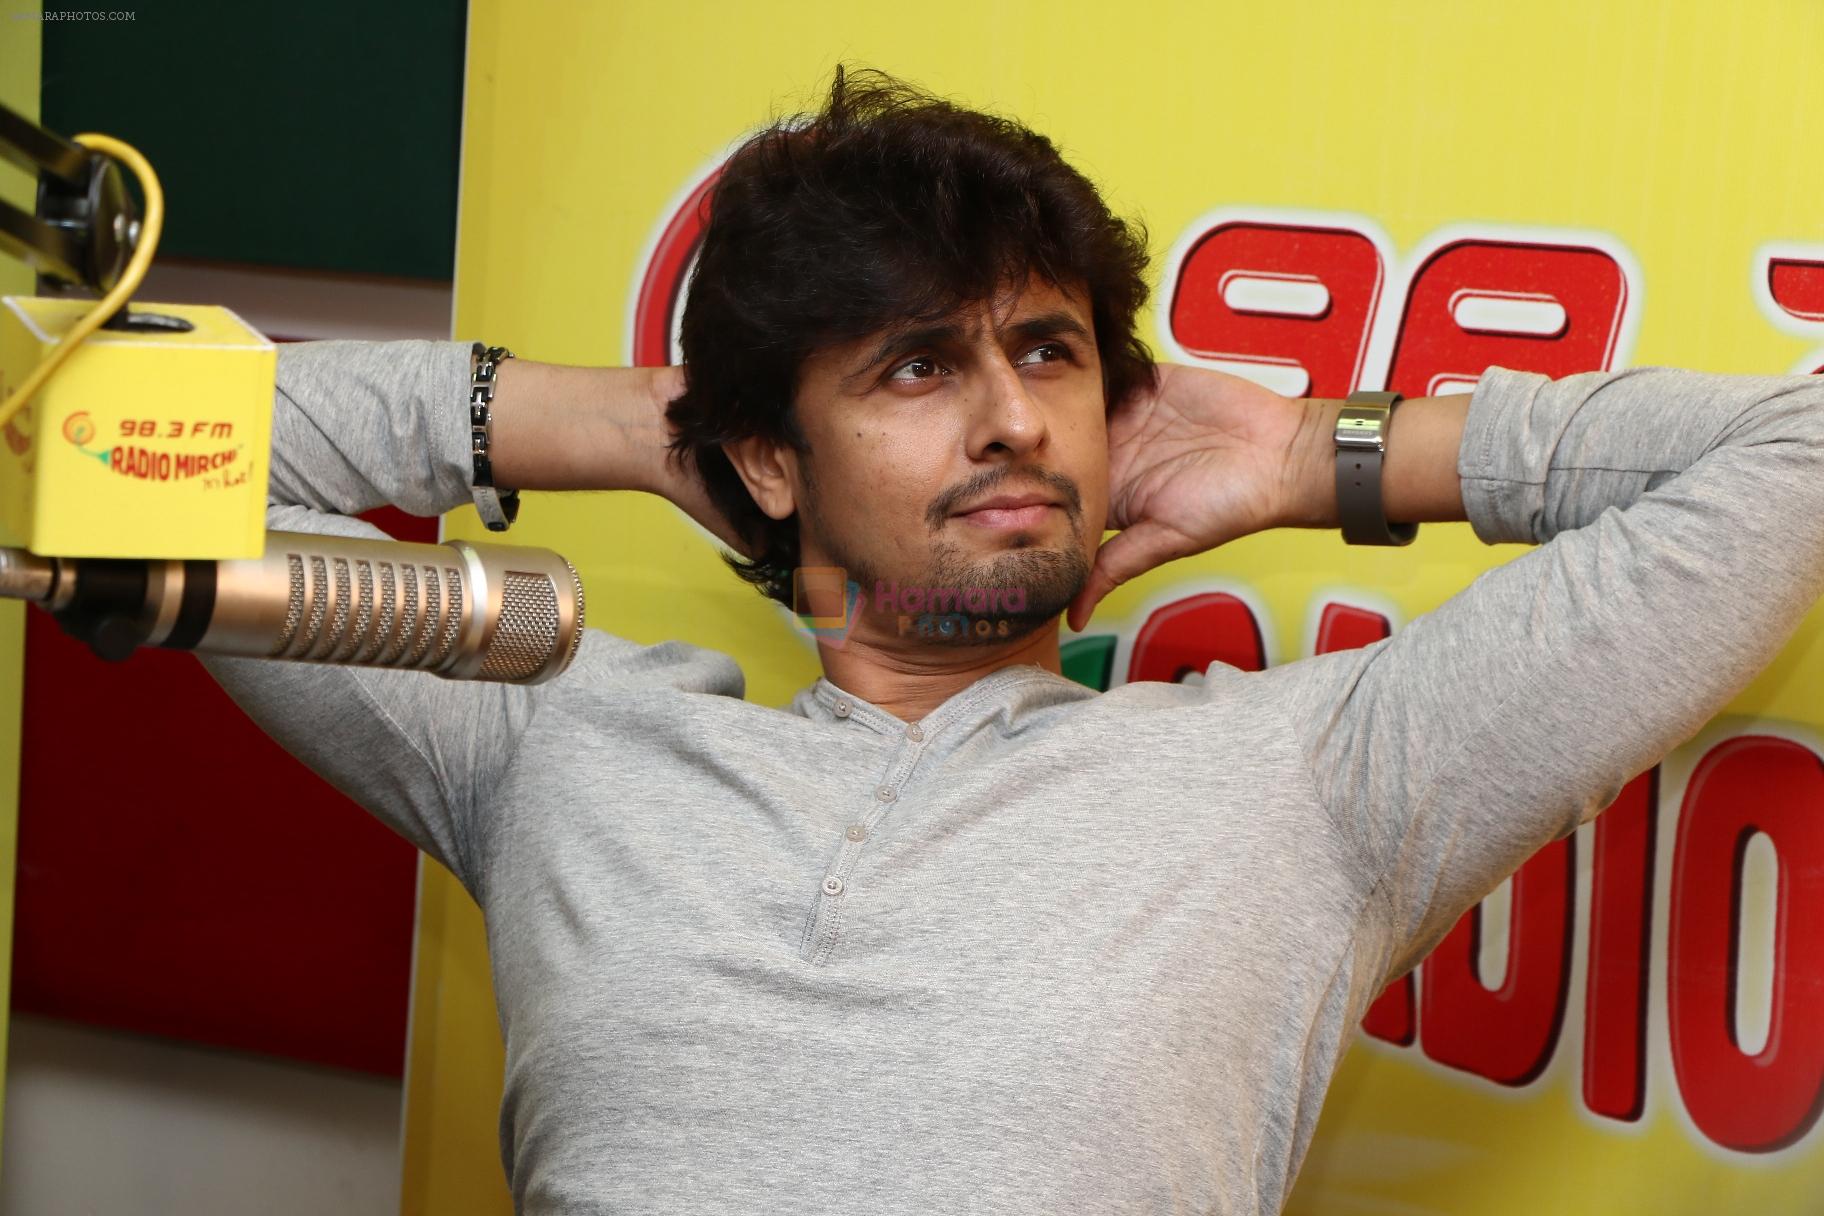 Sonu Nigam at Radio Mirchi Mumbai studio on 7th Nov 2013